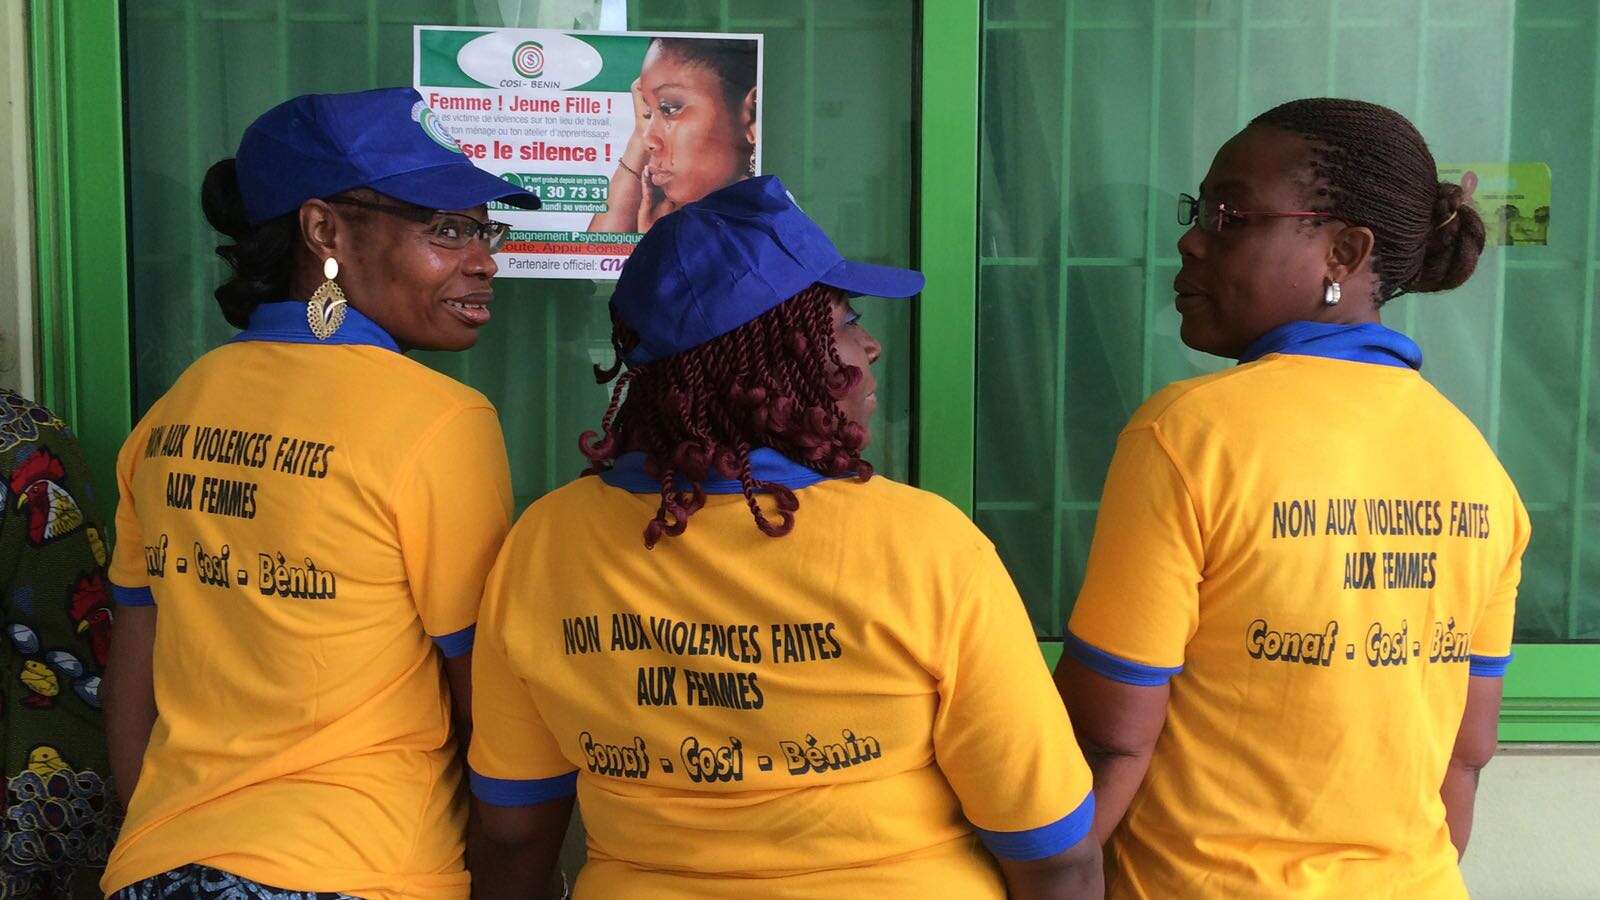 Non aux violences faites aux femmes - message de COSI Benin